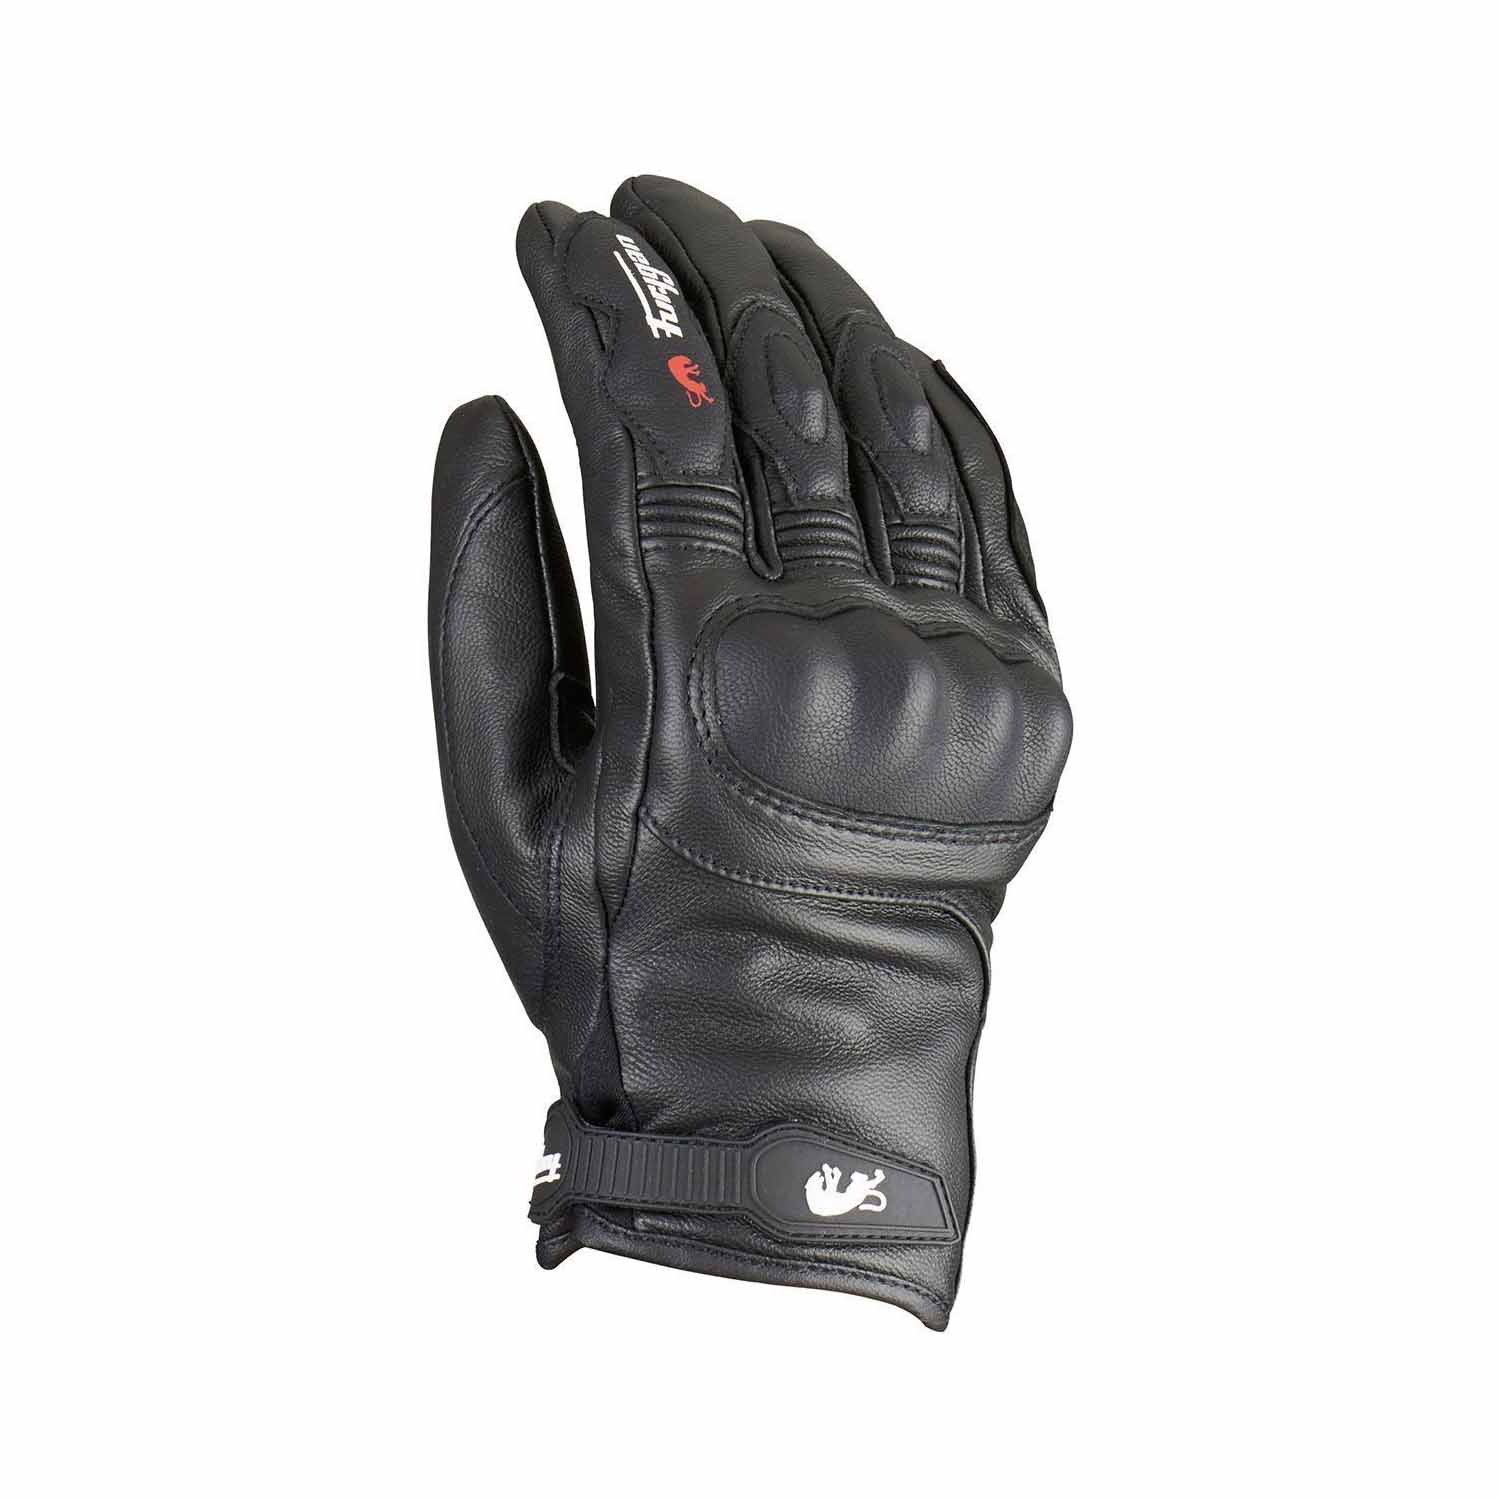 Image of Furygan Gloves TD21 All Season Evo Black Size 2XL ID 3435980328511